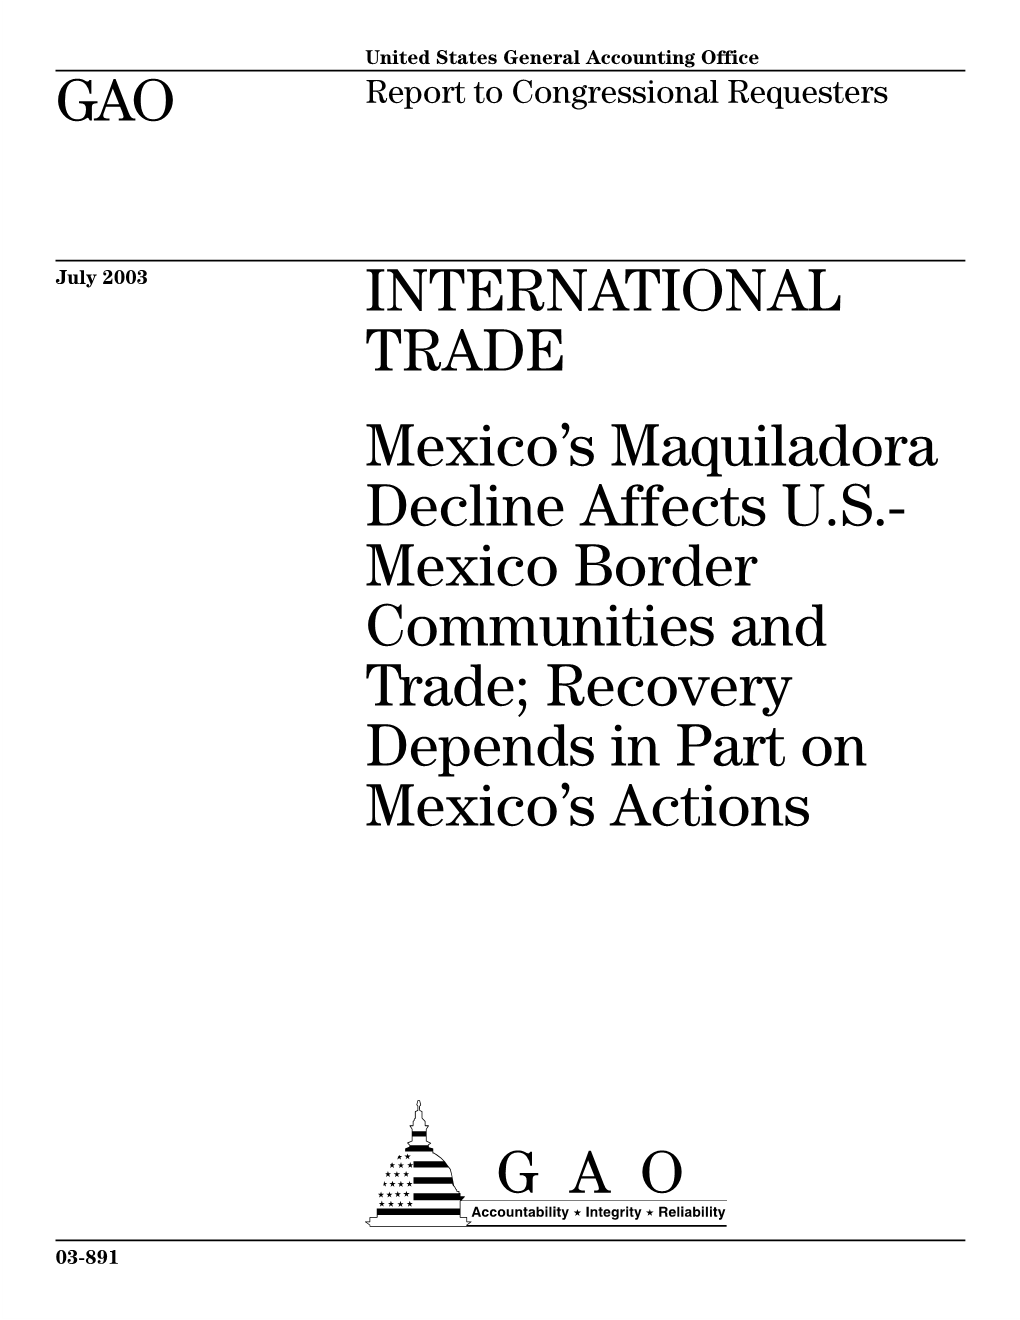 GAO-03-891 International Trade: Mexico's Maquiladora Decline